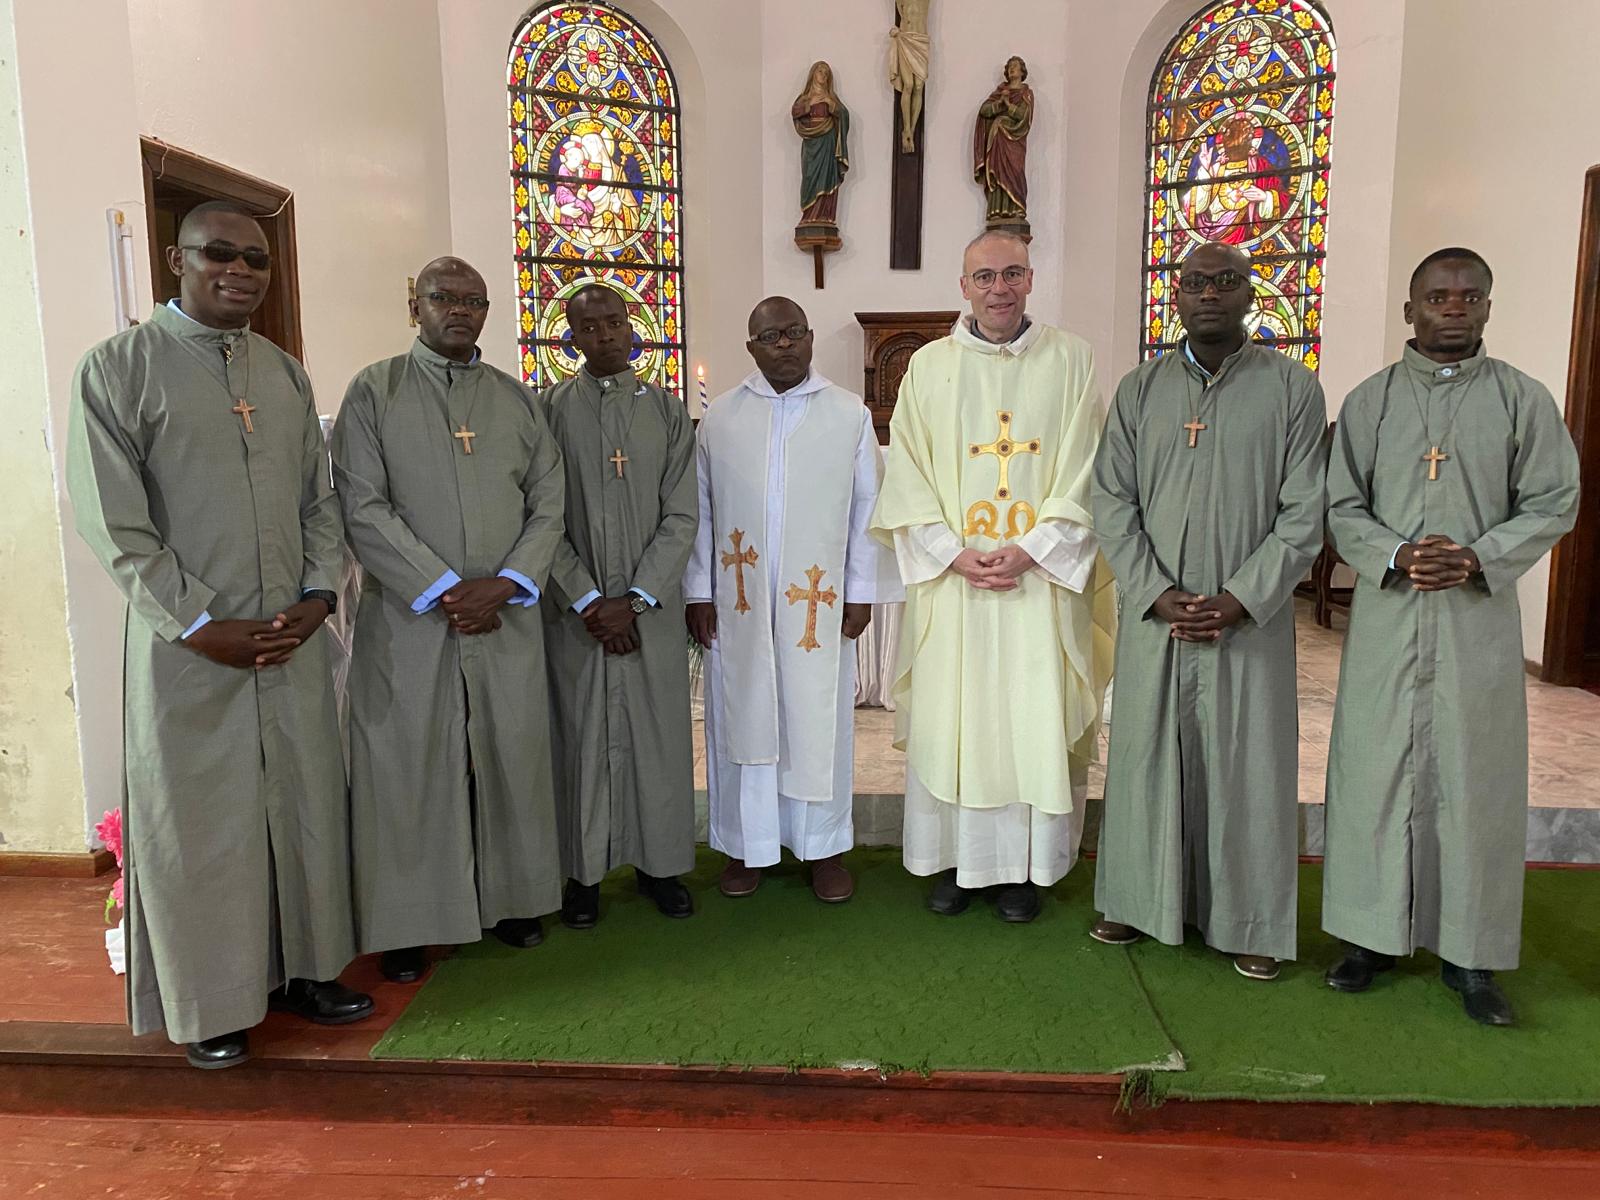 Au Zimbabwe, le noviciat des missionnaires SMB commence avec l’accueil de cinq novices